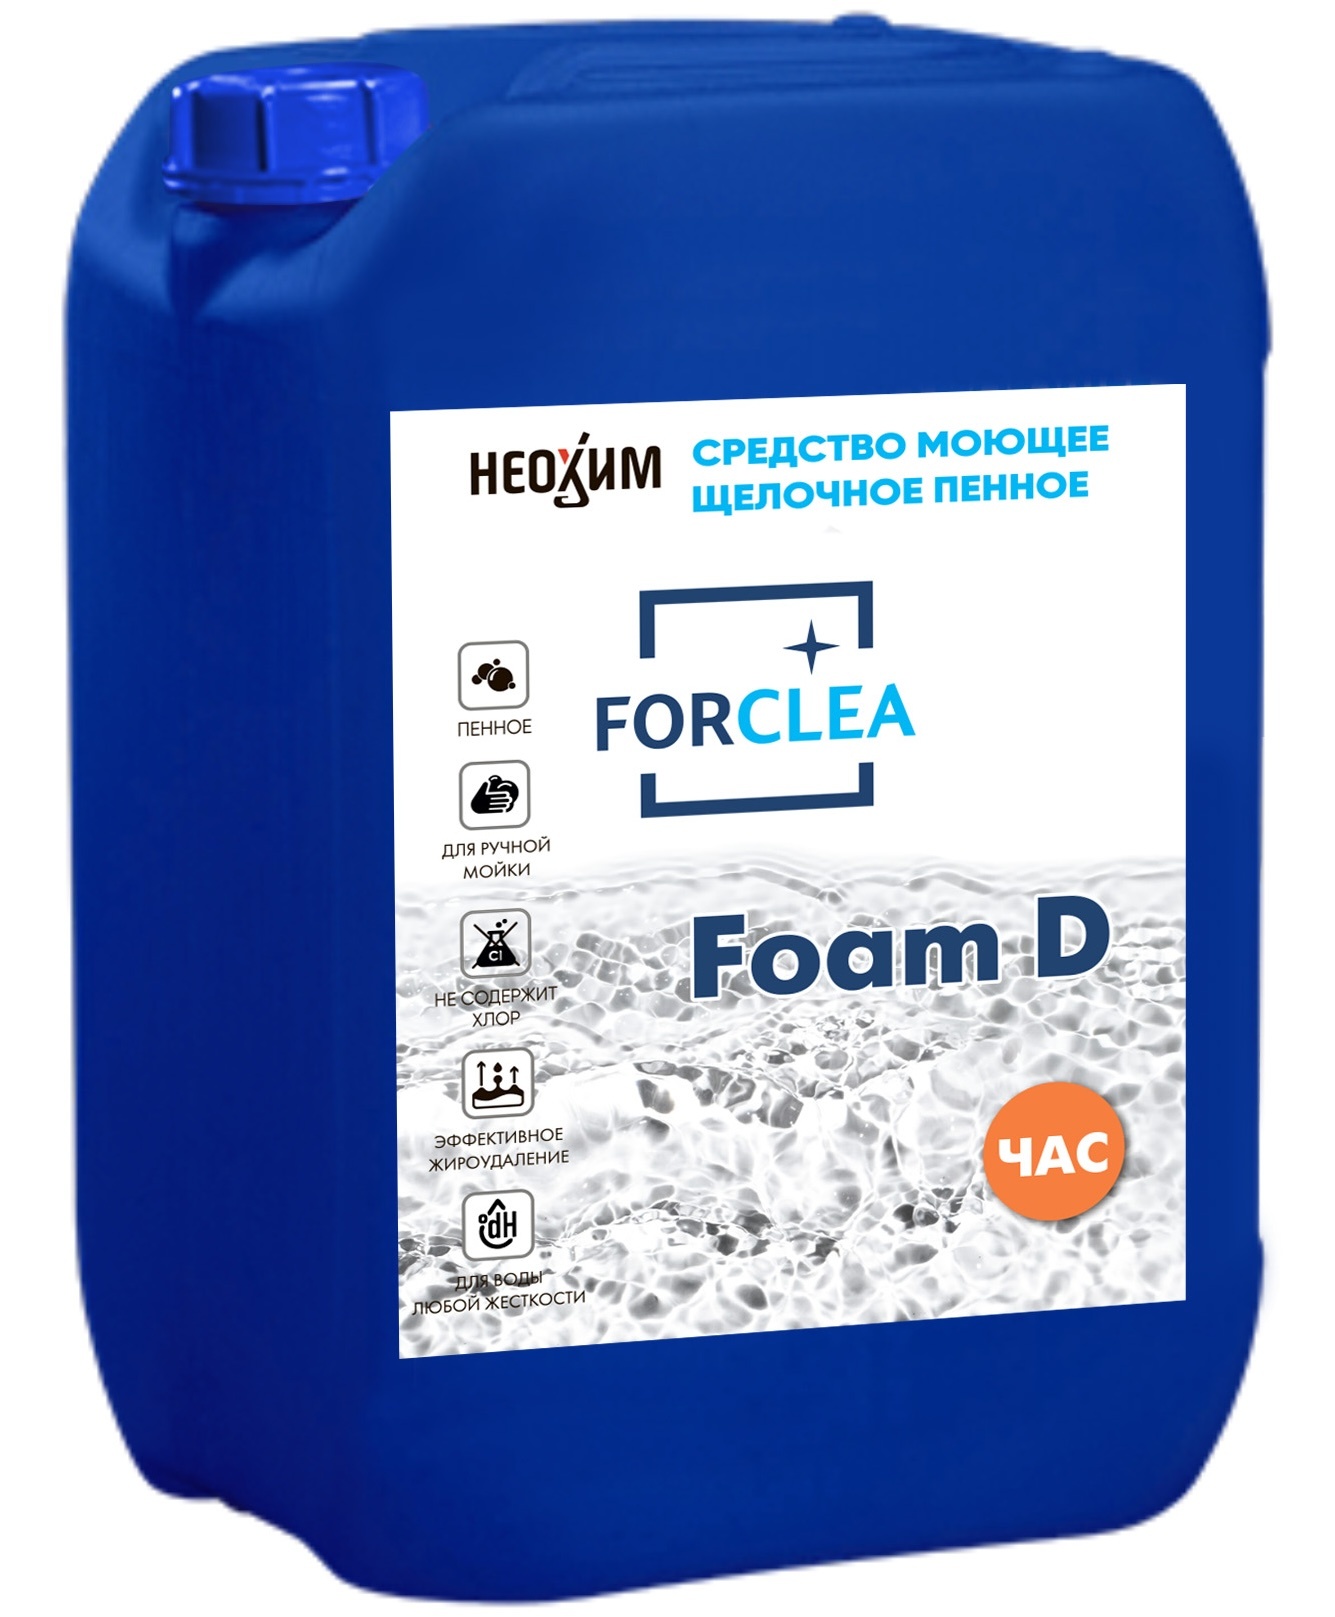 FORCLEA Foam D